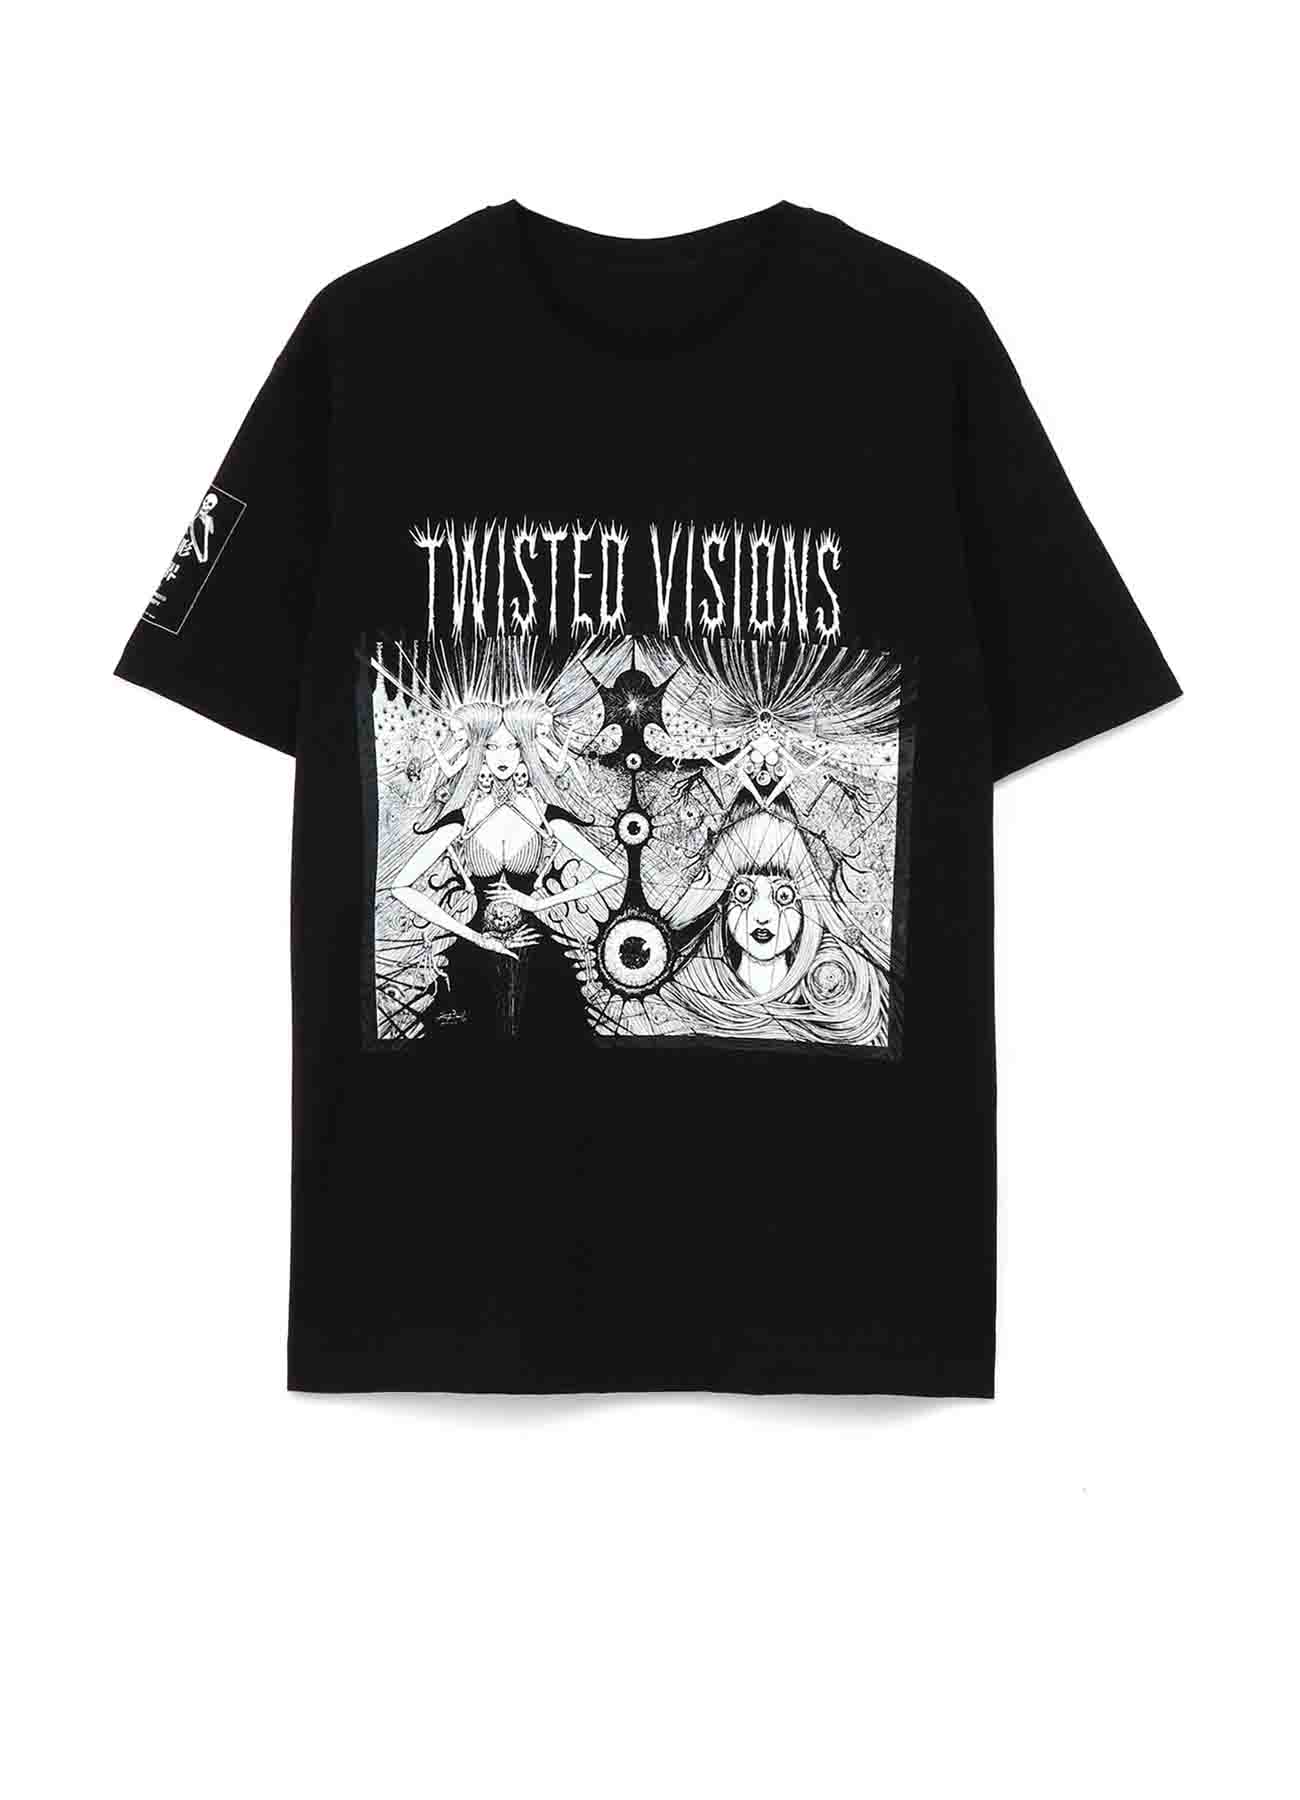 Junji ITO "Twisted Visions" T-shirt